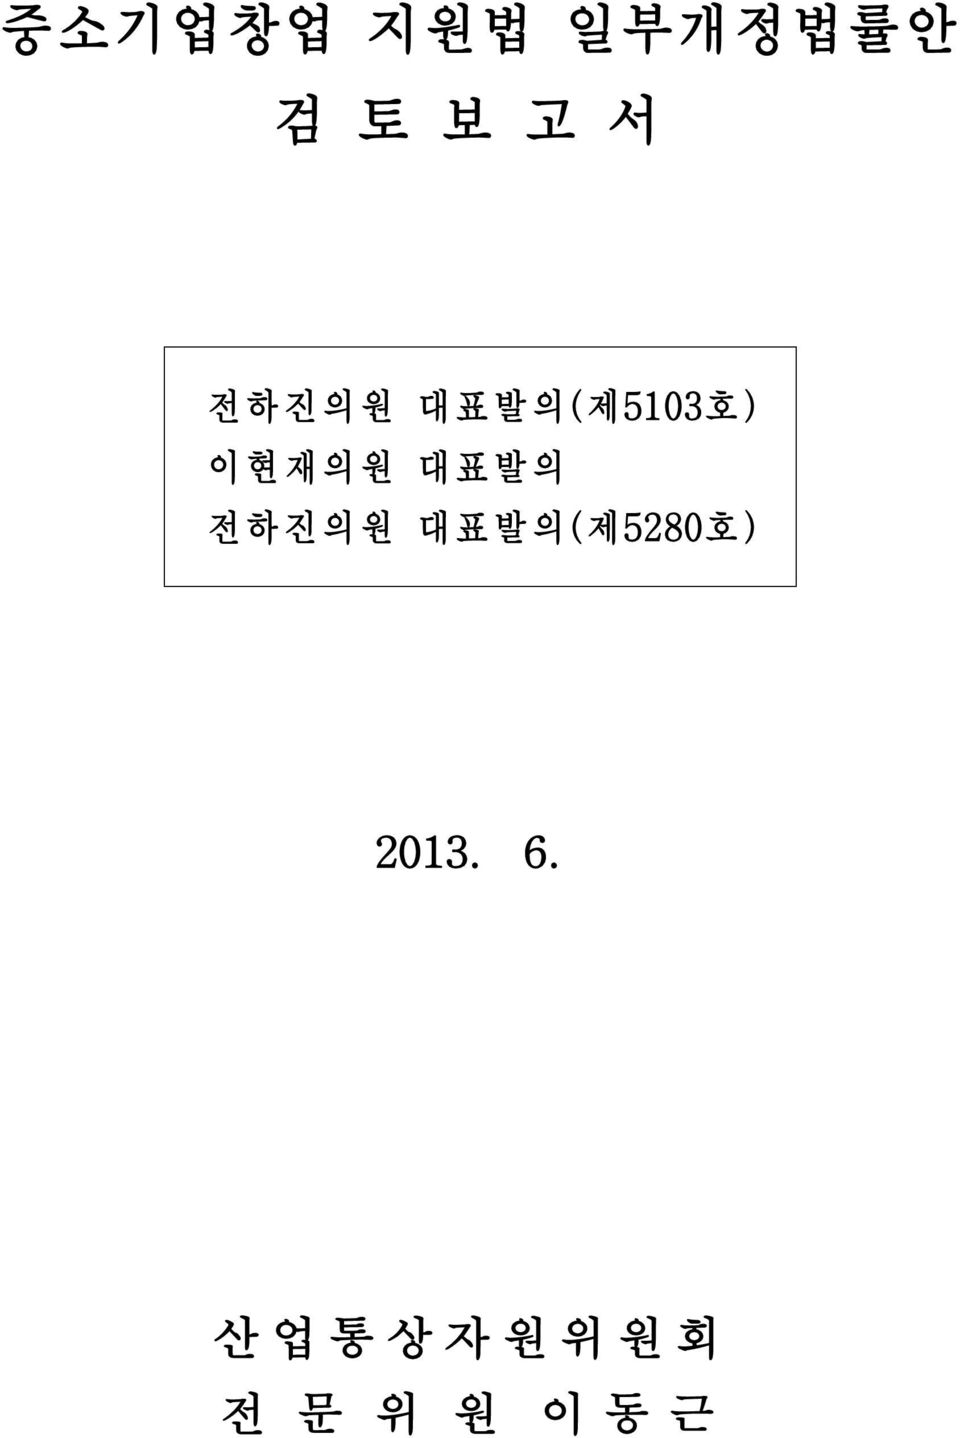 전하 진의원 대표발 의(제5280호 ) 2013. 6.